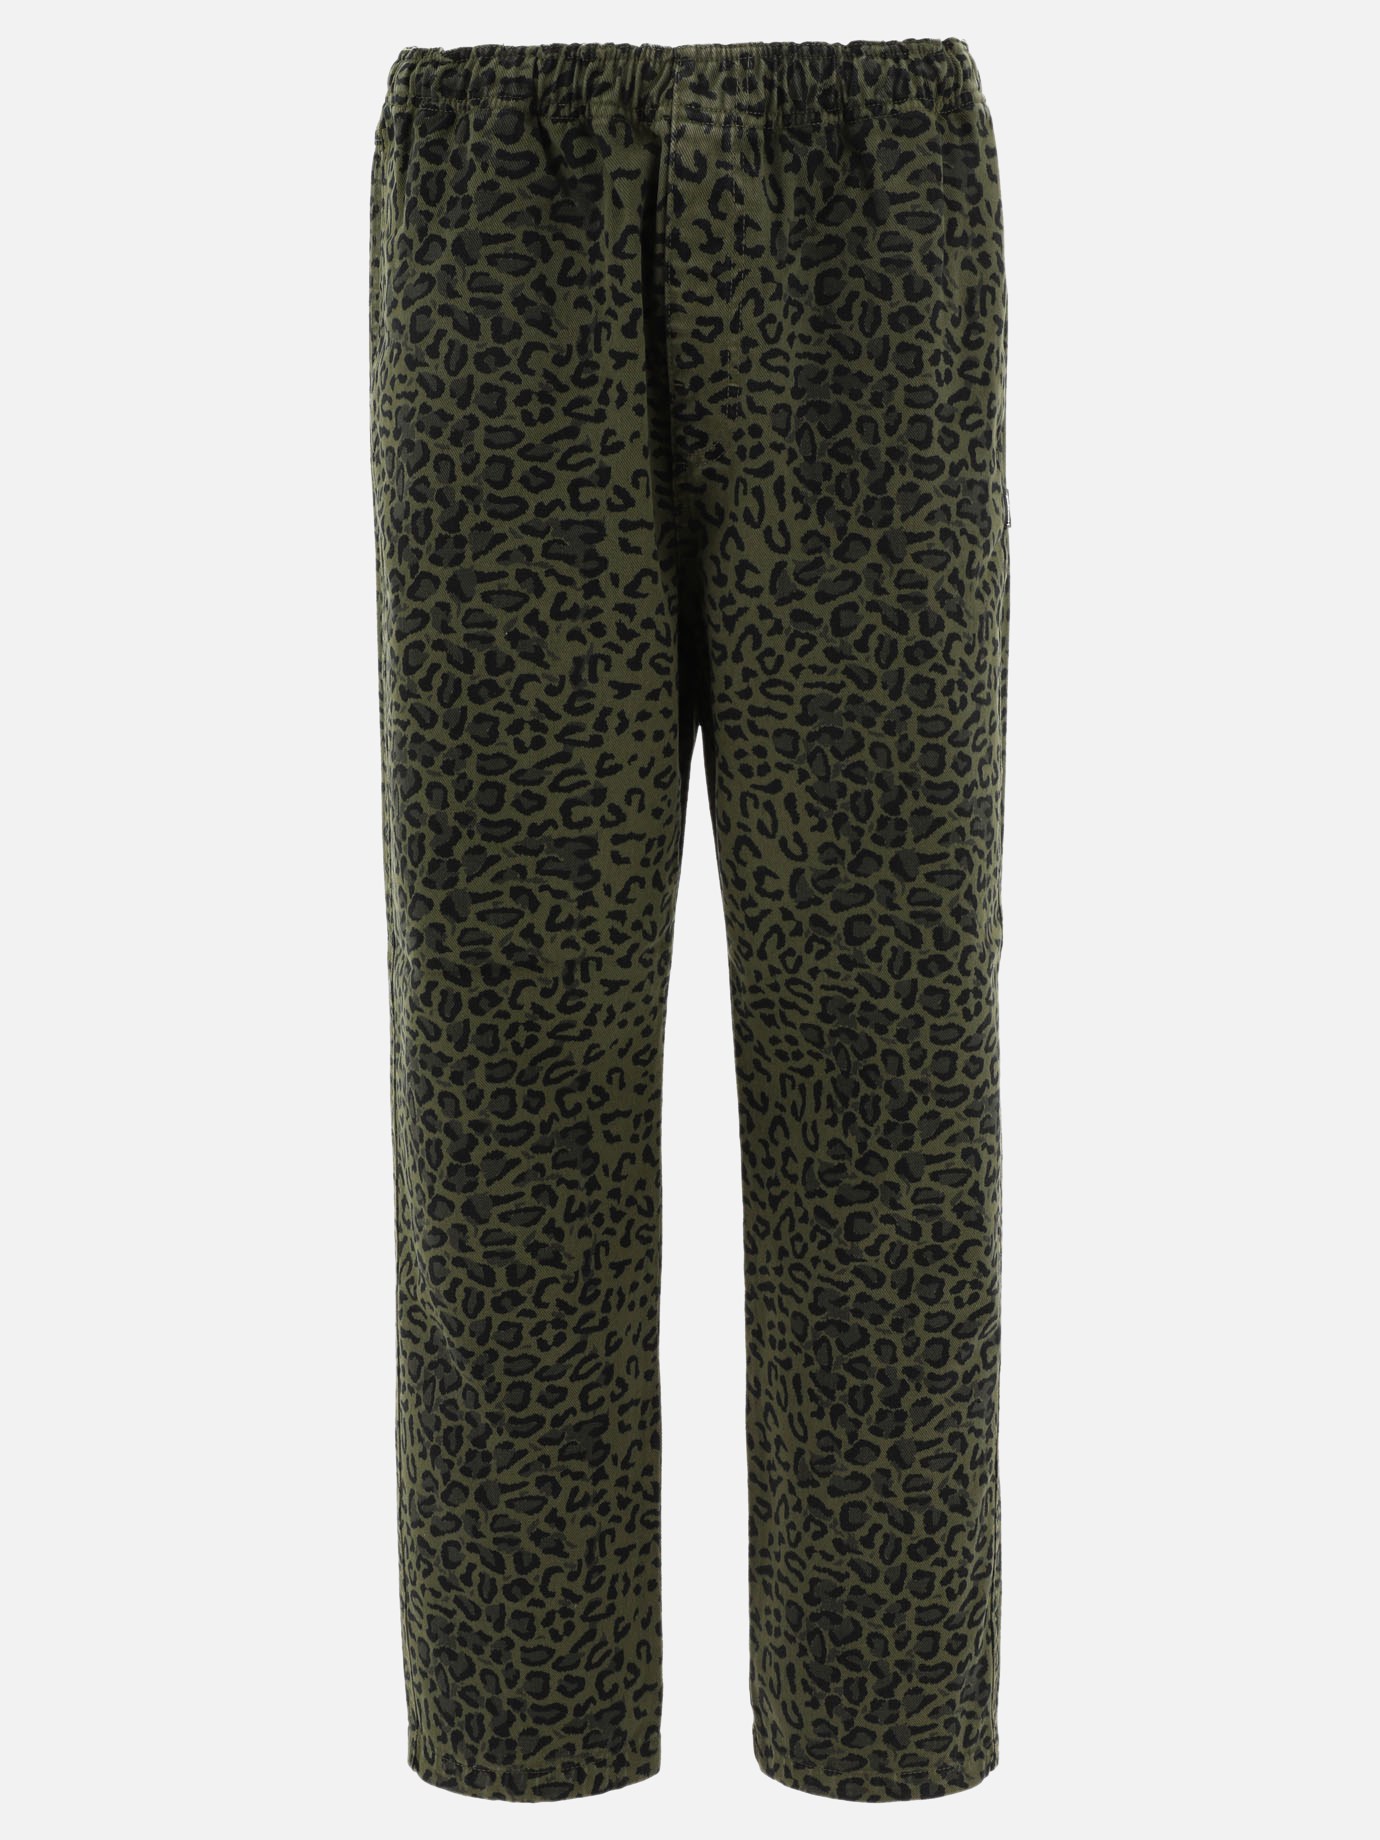 Leopard stretch trousers